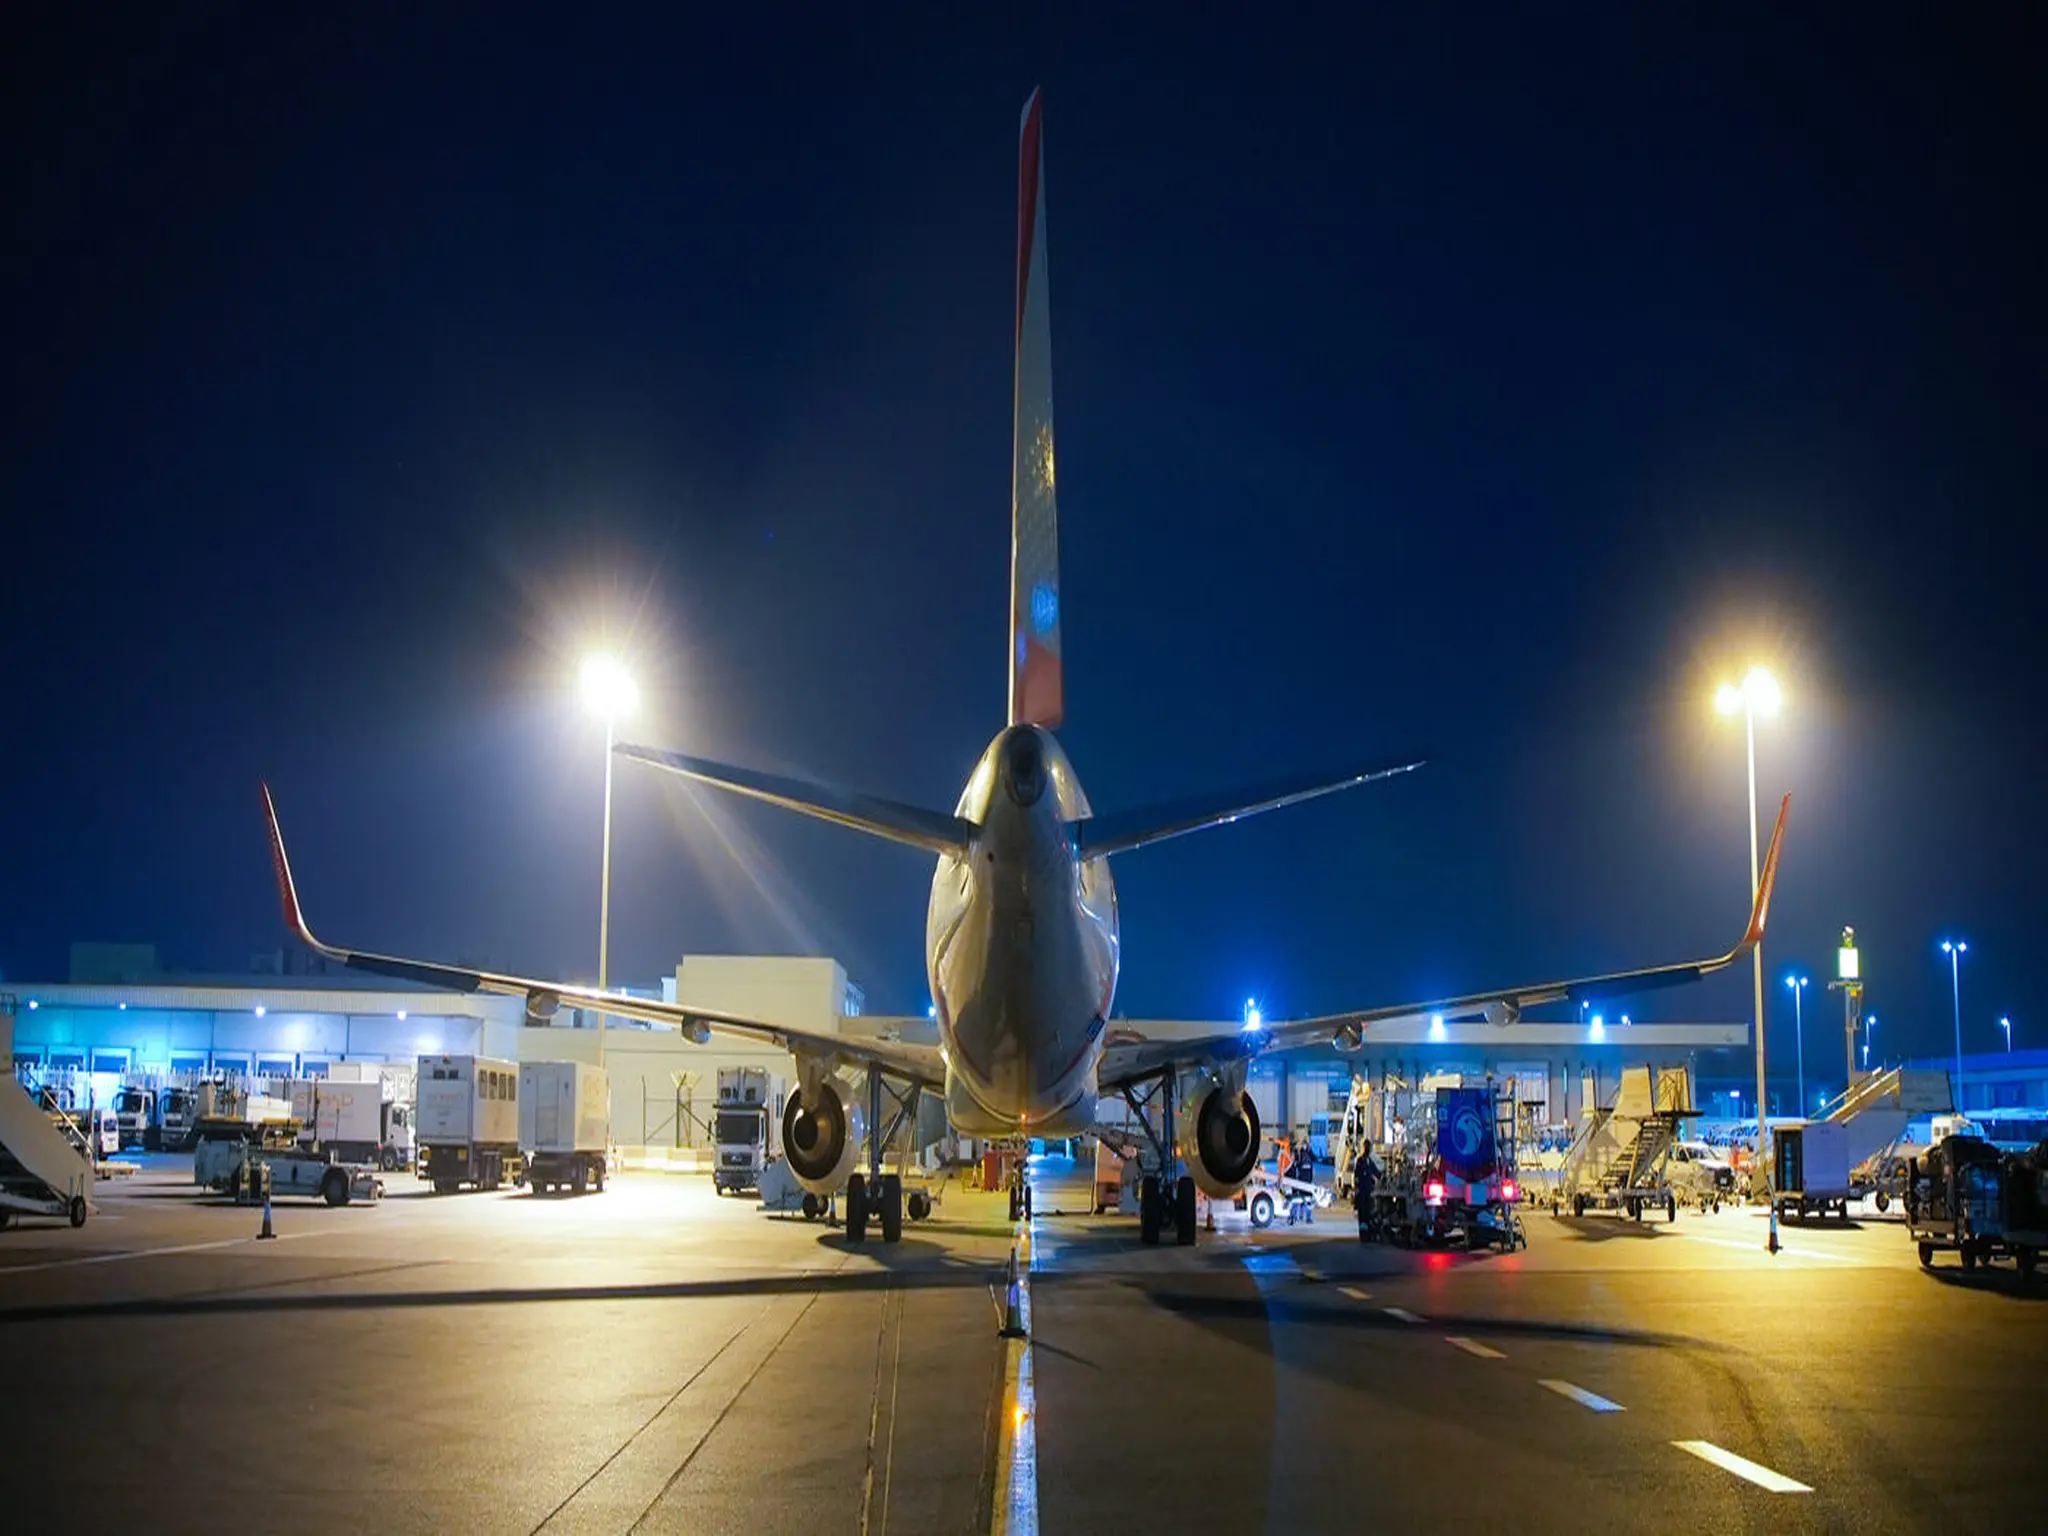 حادث طائرة ركاب في مطار دبي يتسبب في فرض عقوبات على الطيارين